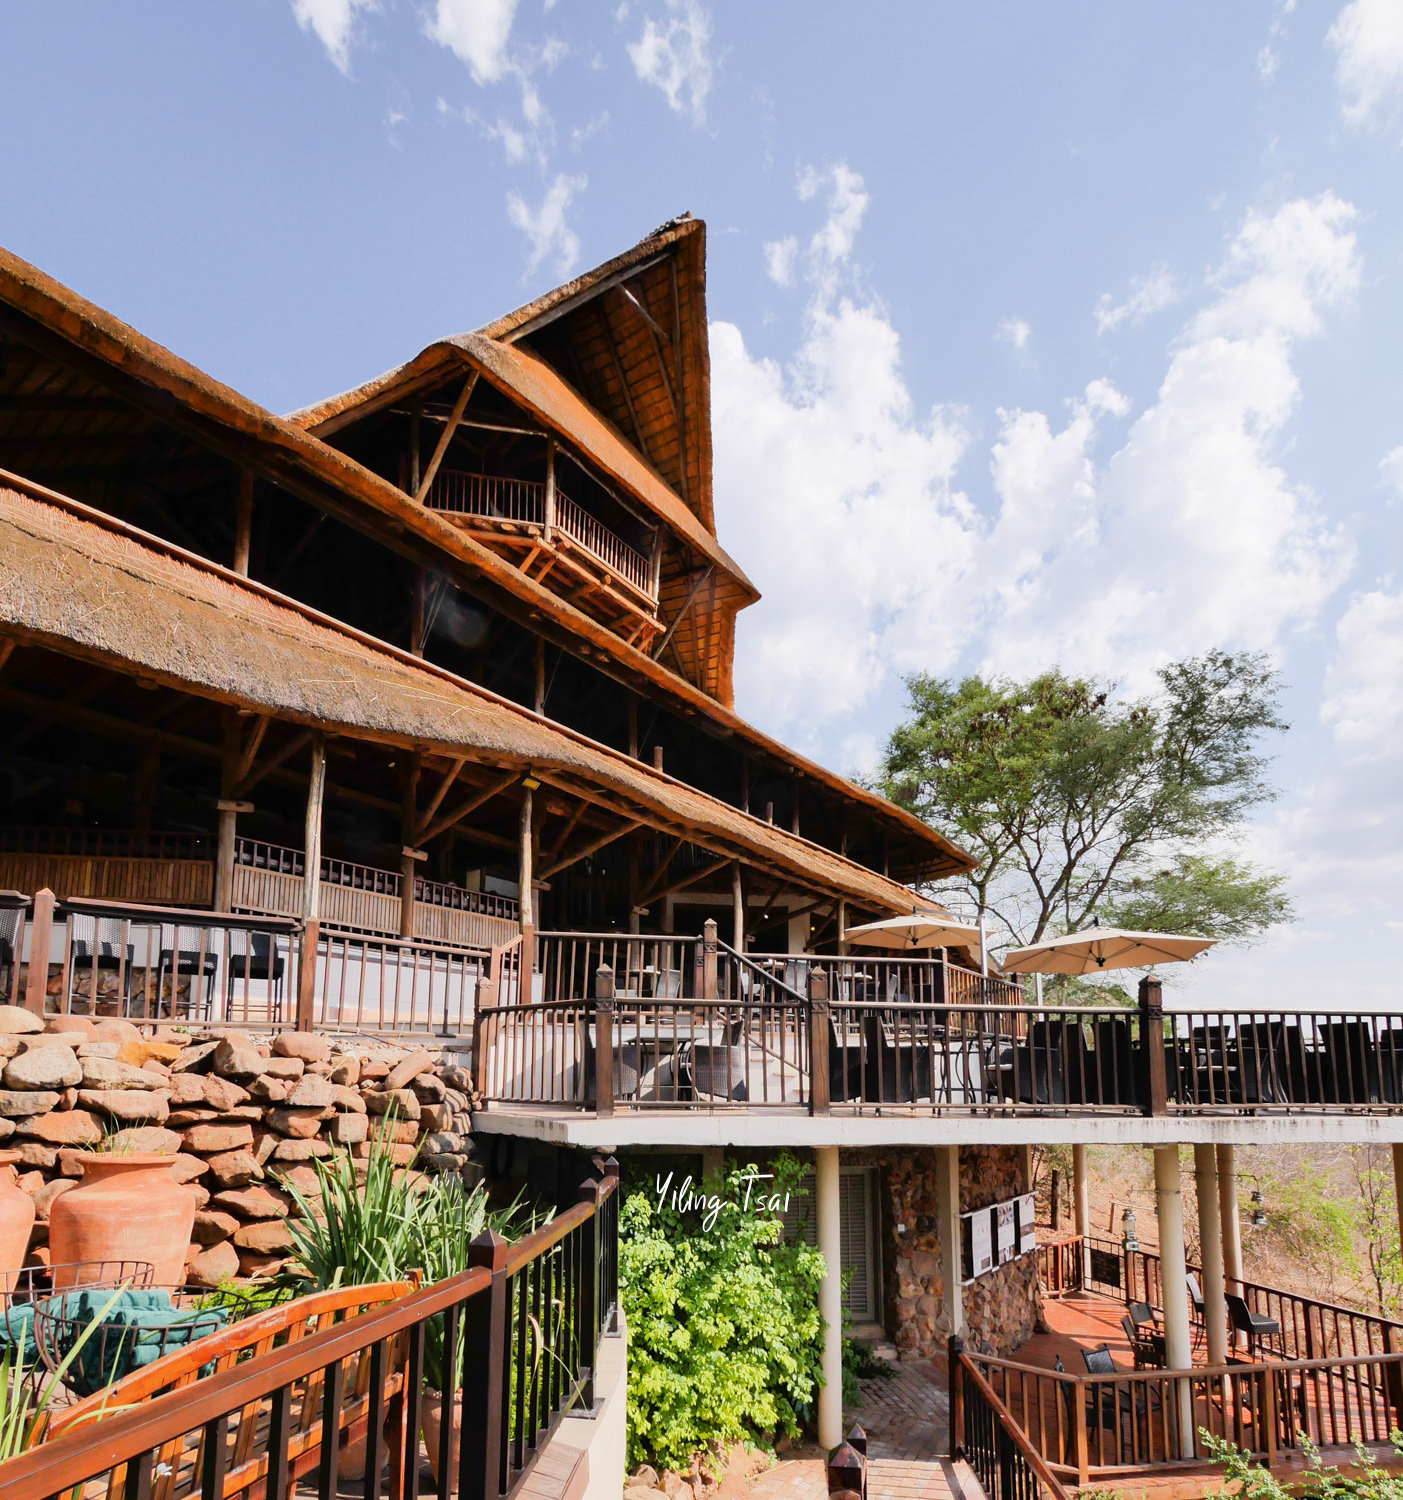 辛巴威維多利亞瀑布住宿 Victoria Falls Safari Lodge 最接近大草原的維多利亞瀑布飯店